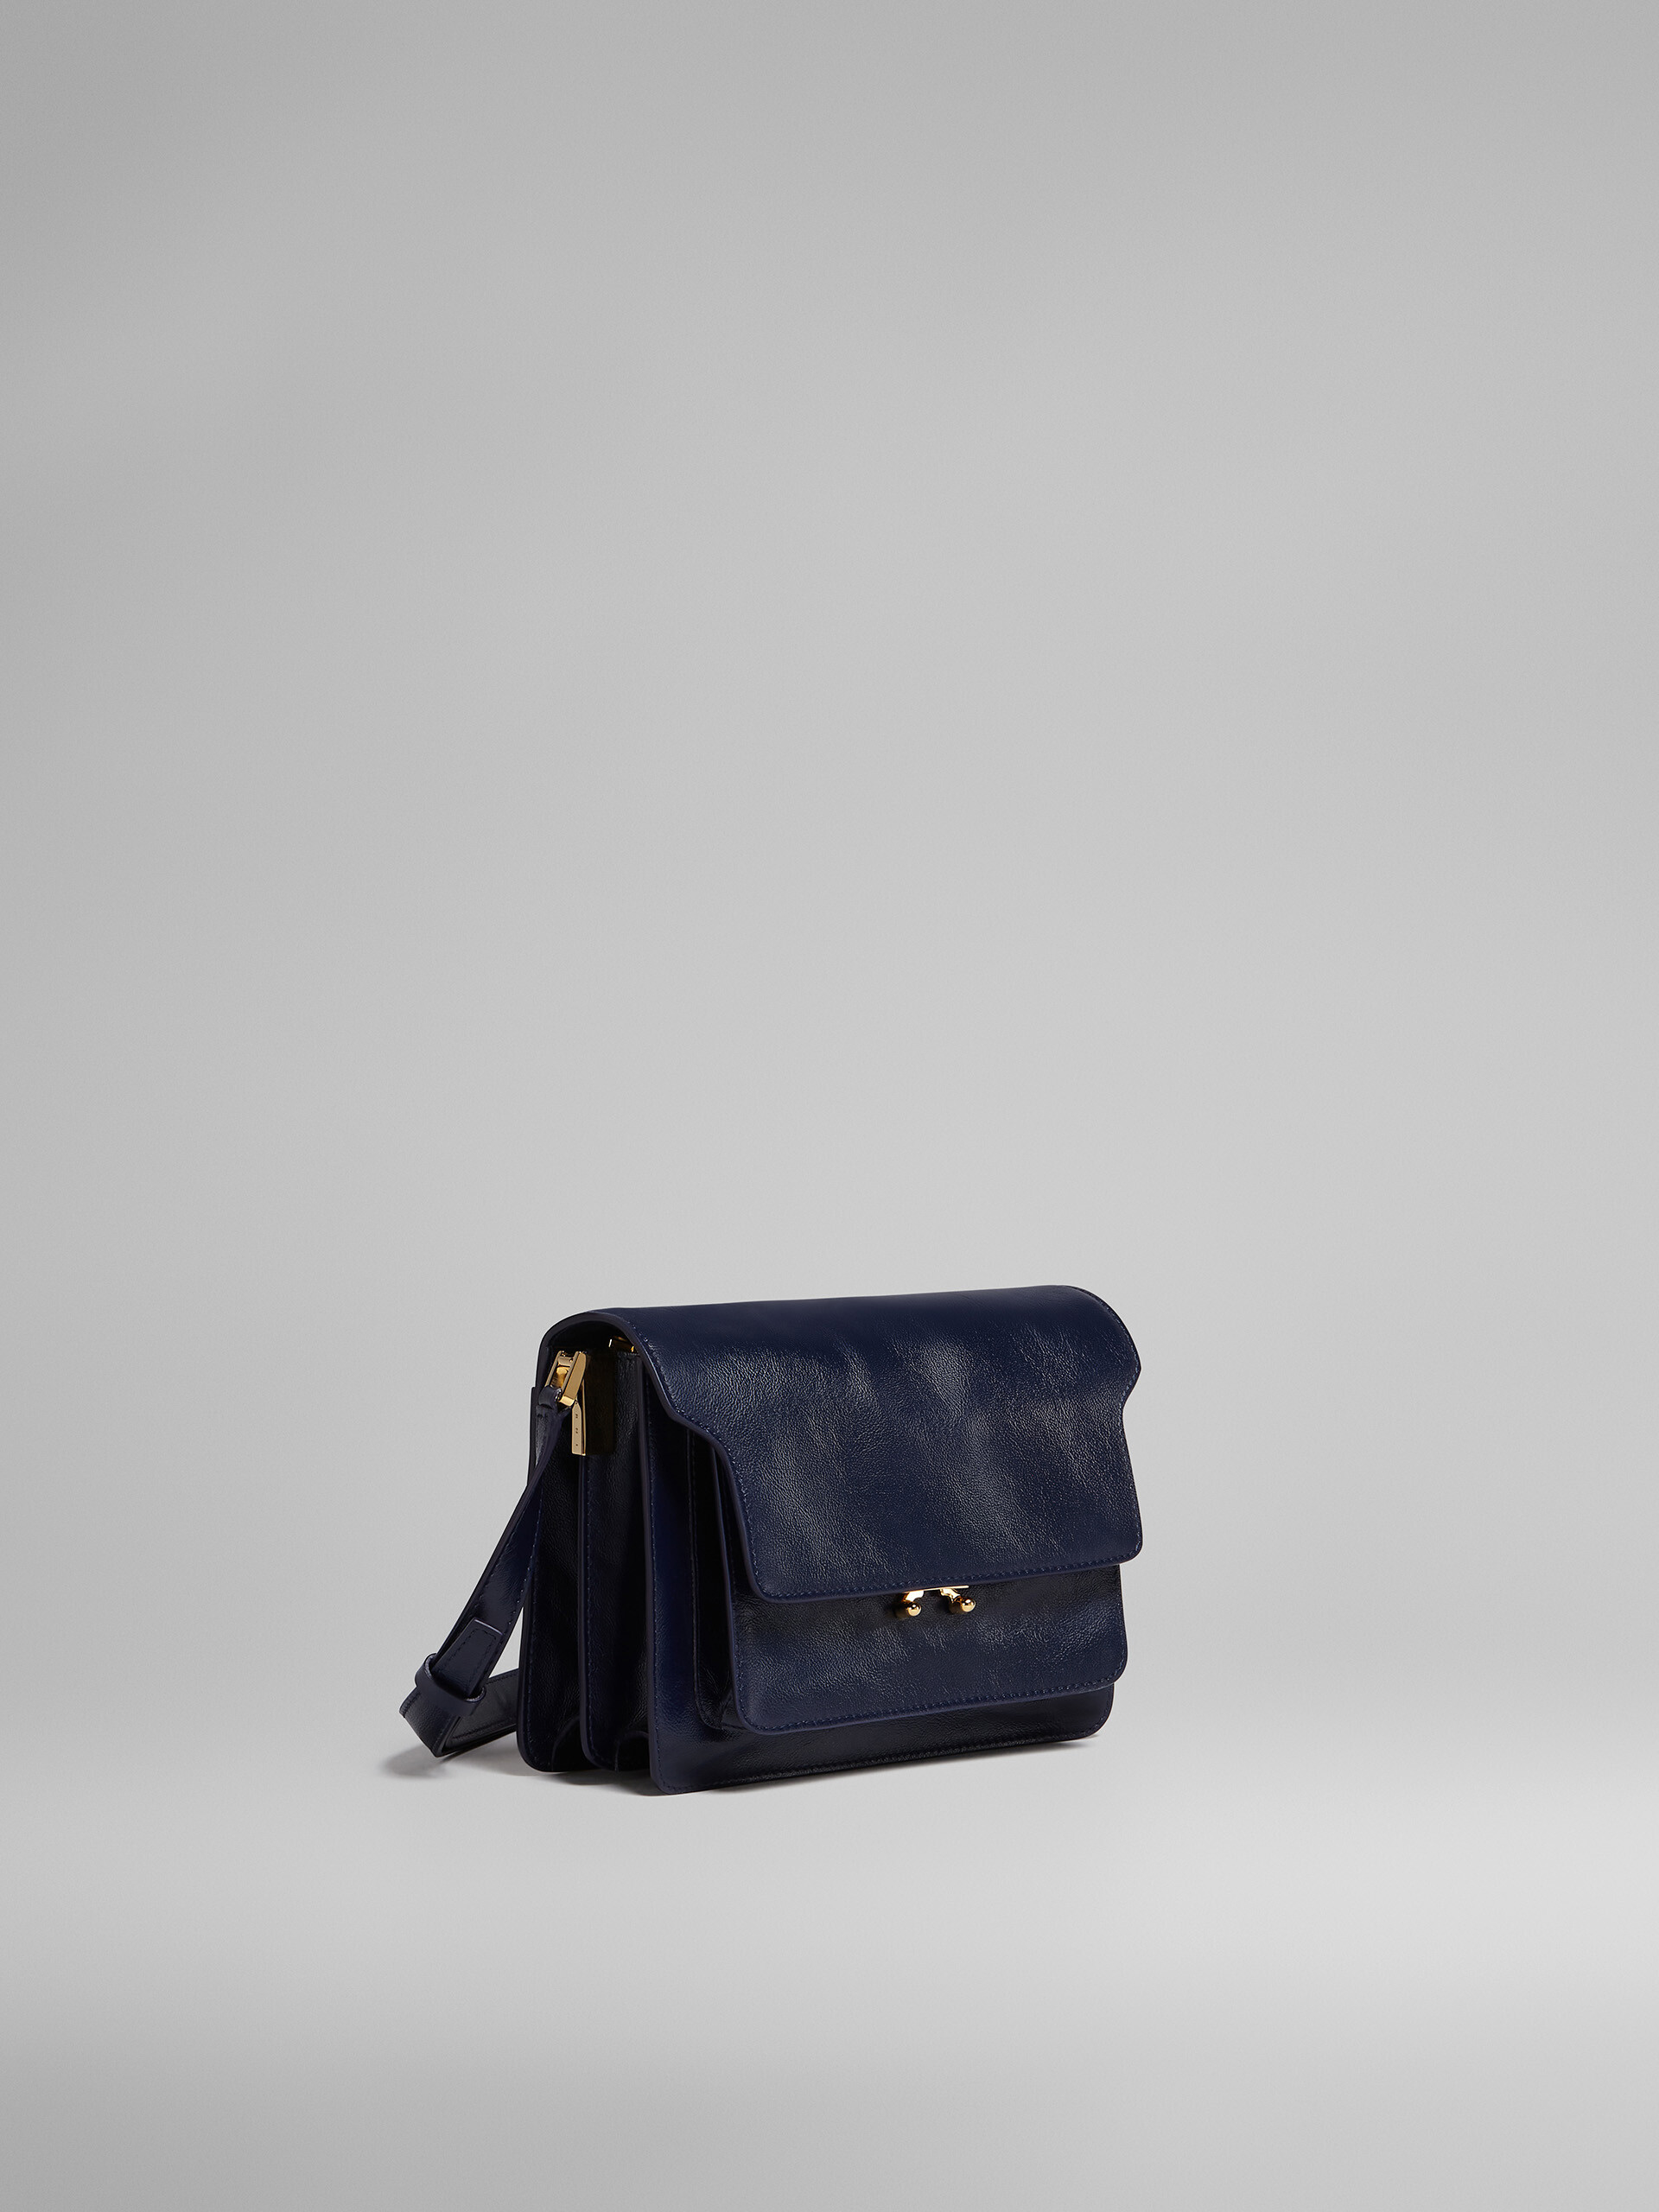 TRUNK SOFT medium bag in blue leather - Shoulder Bag - Image 6